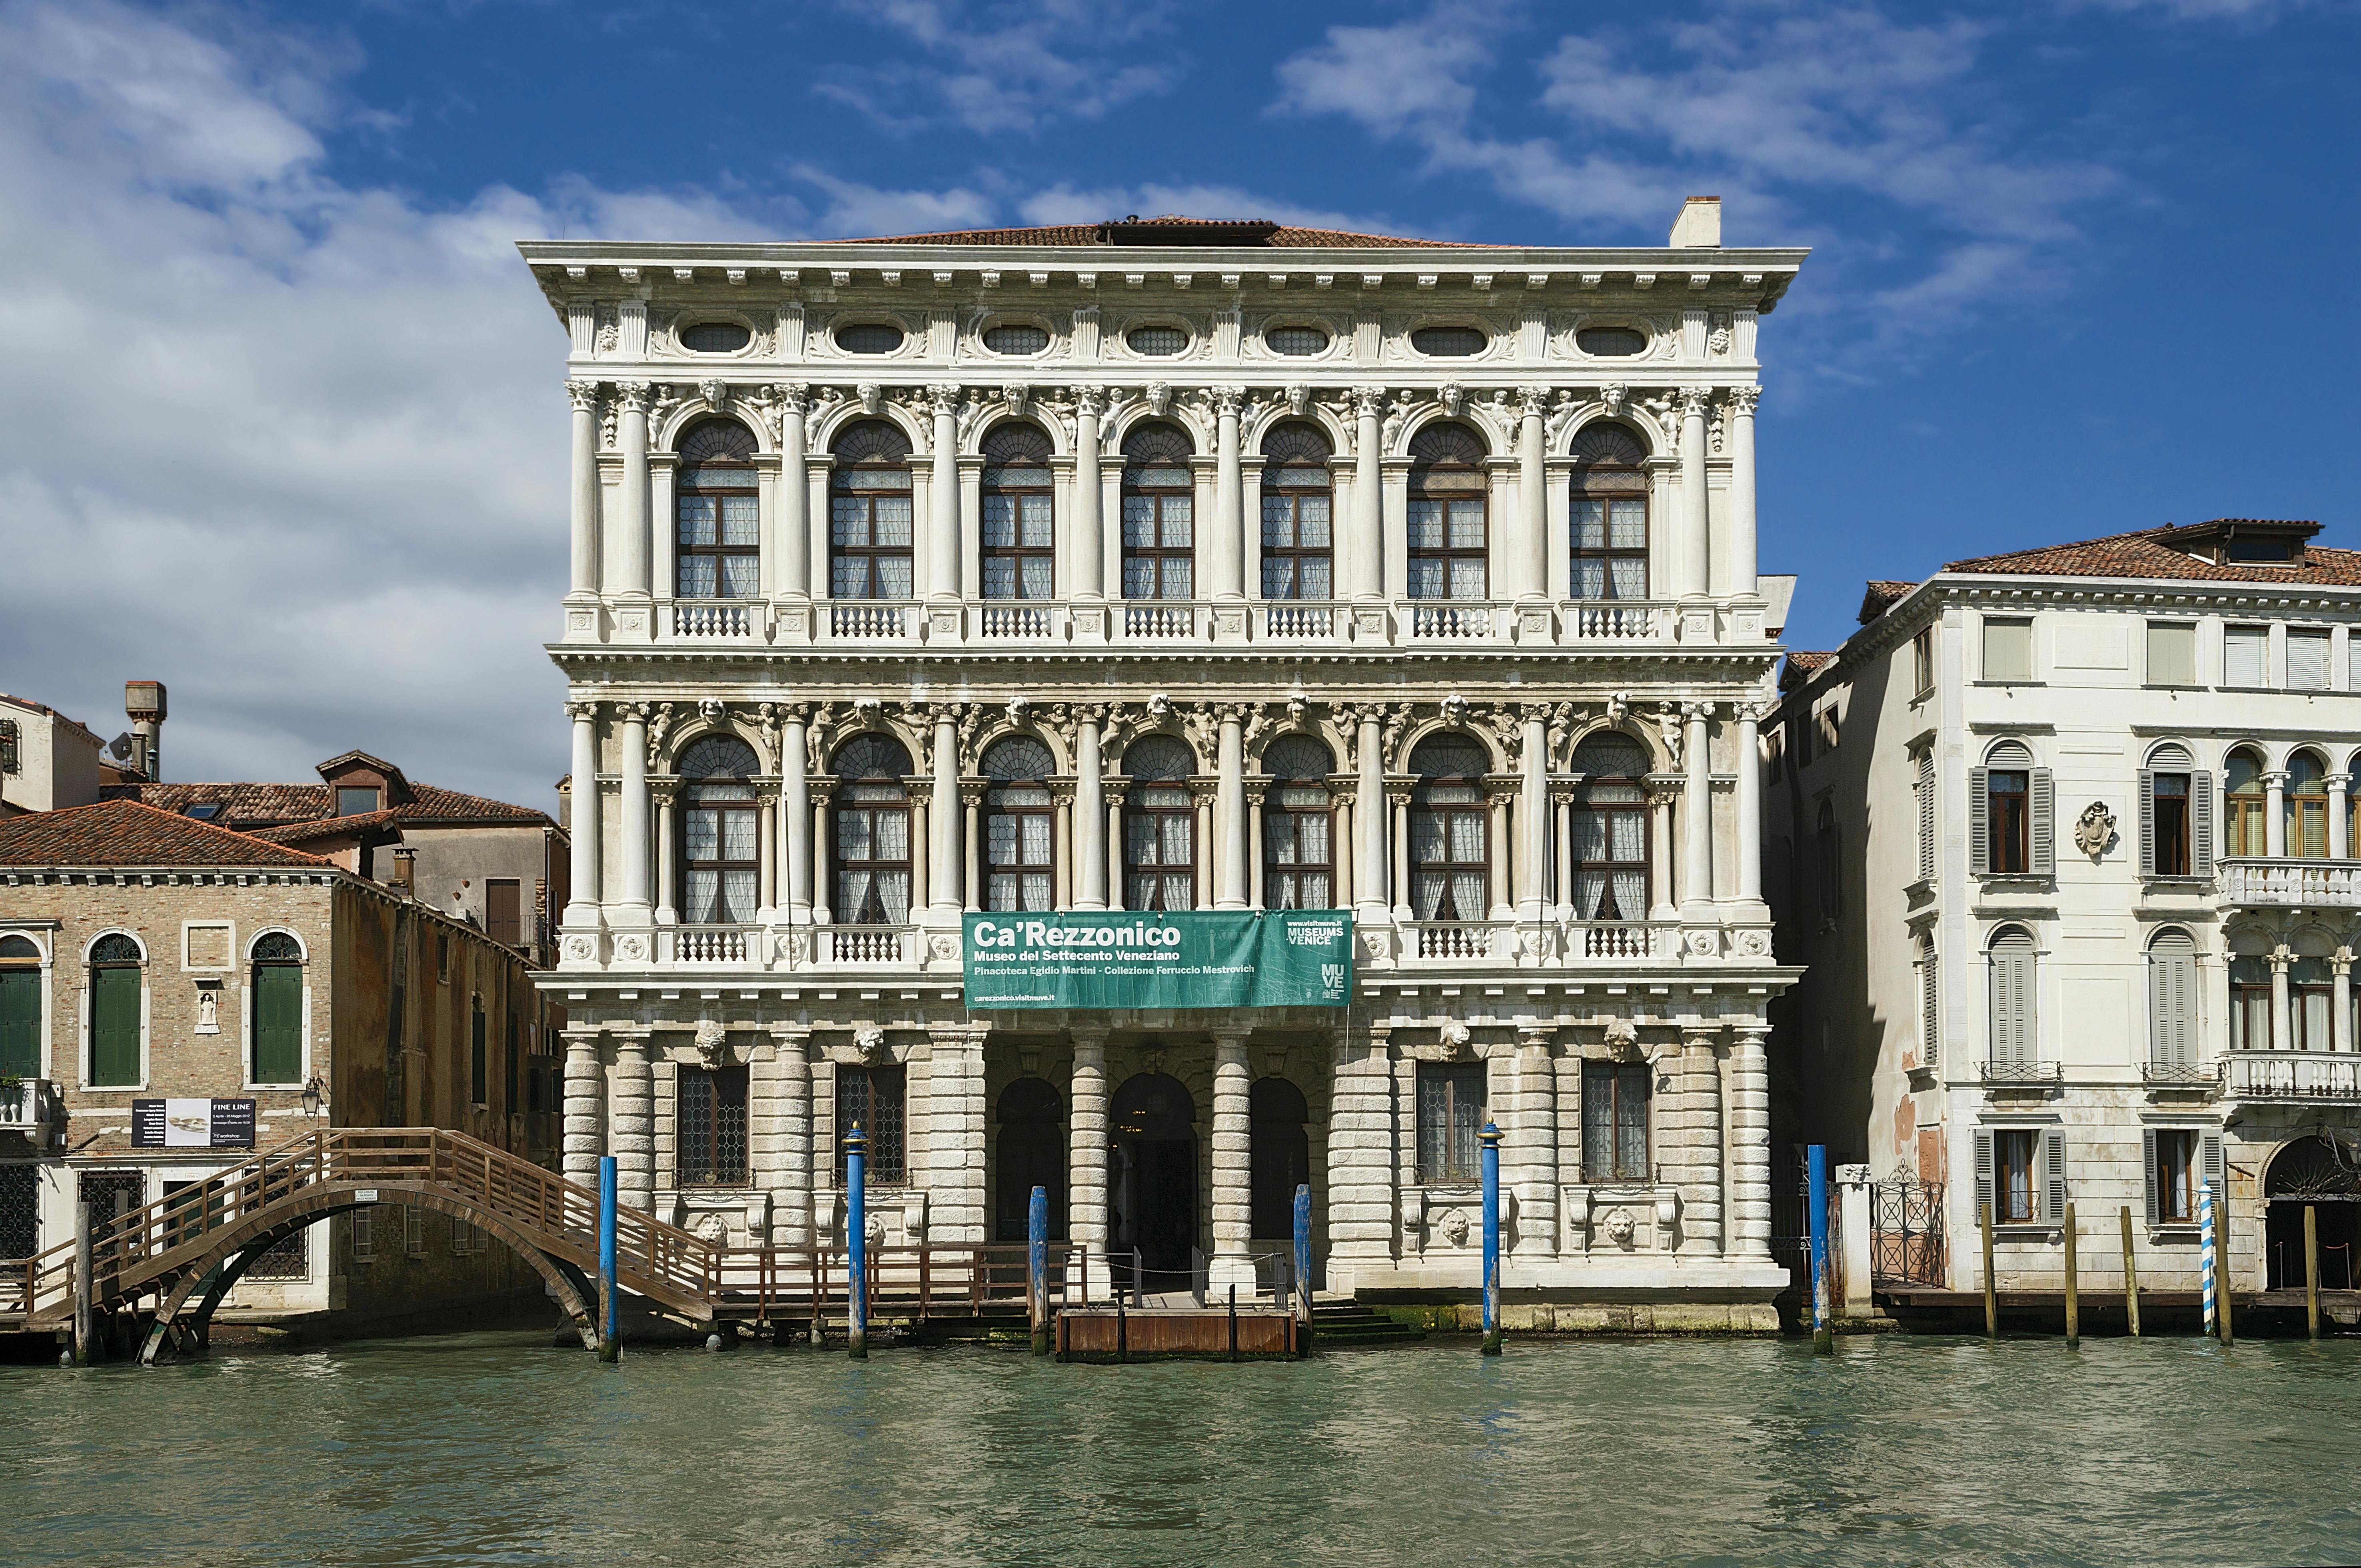 Eintrittskarten für das Ca' Rezzonico-Museum in Venedig aus dem 18. Jahrhundert